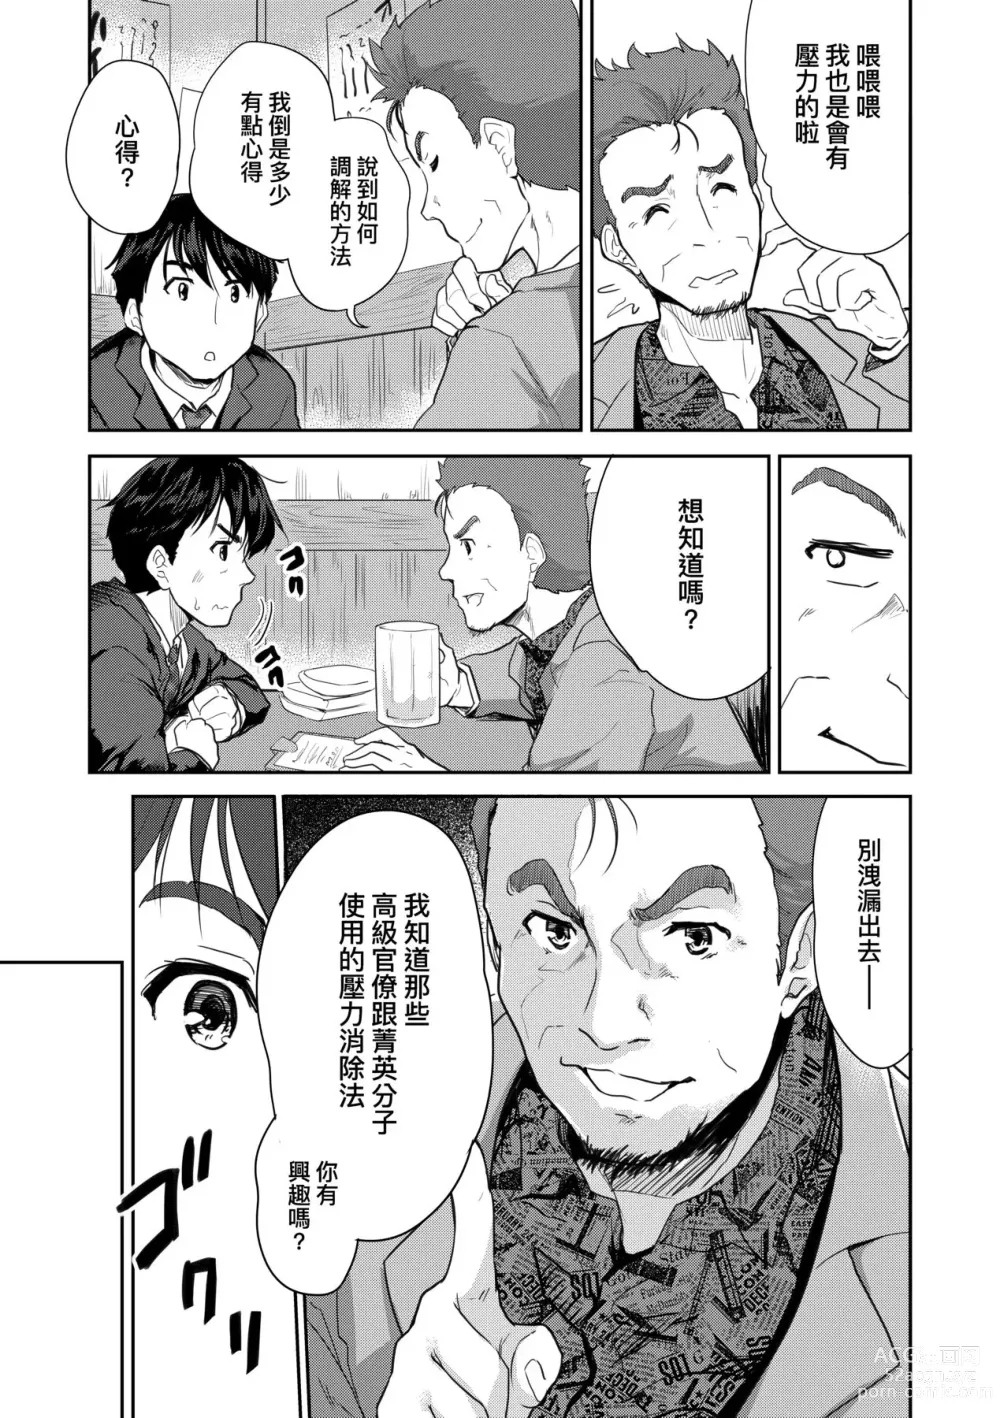 Page 14 of manga 把玩妳綿軟歐派並含入口中品嘗 (decensored)